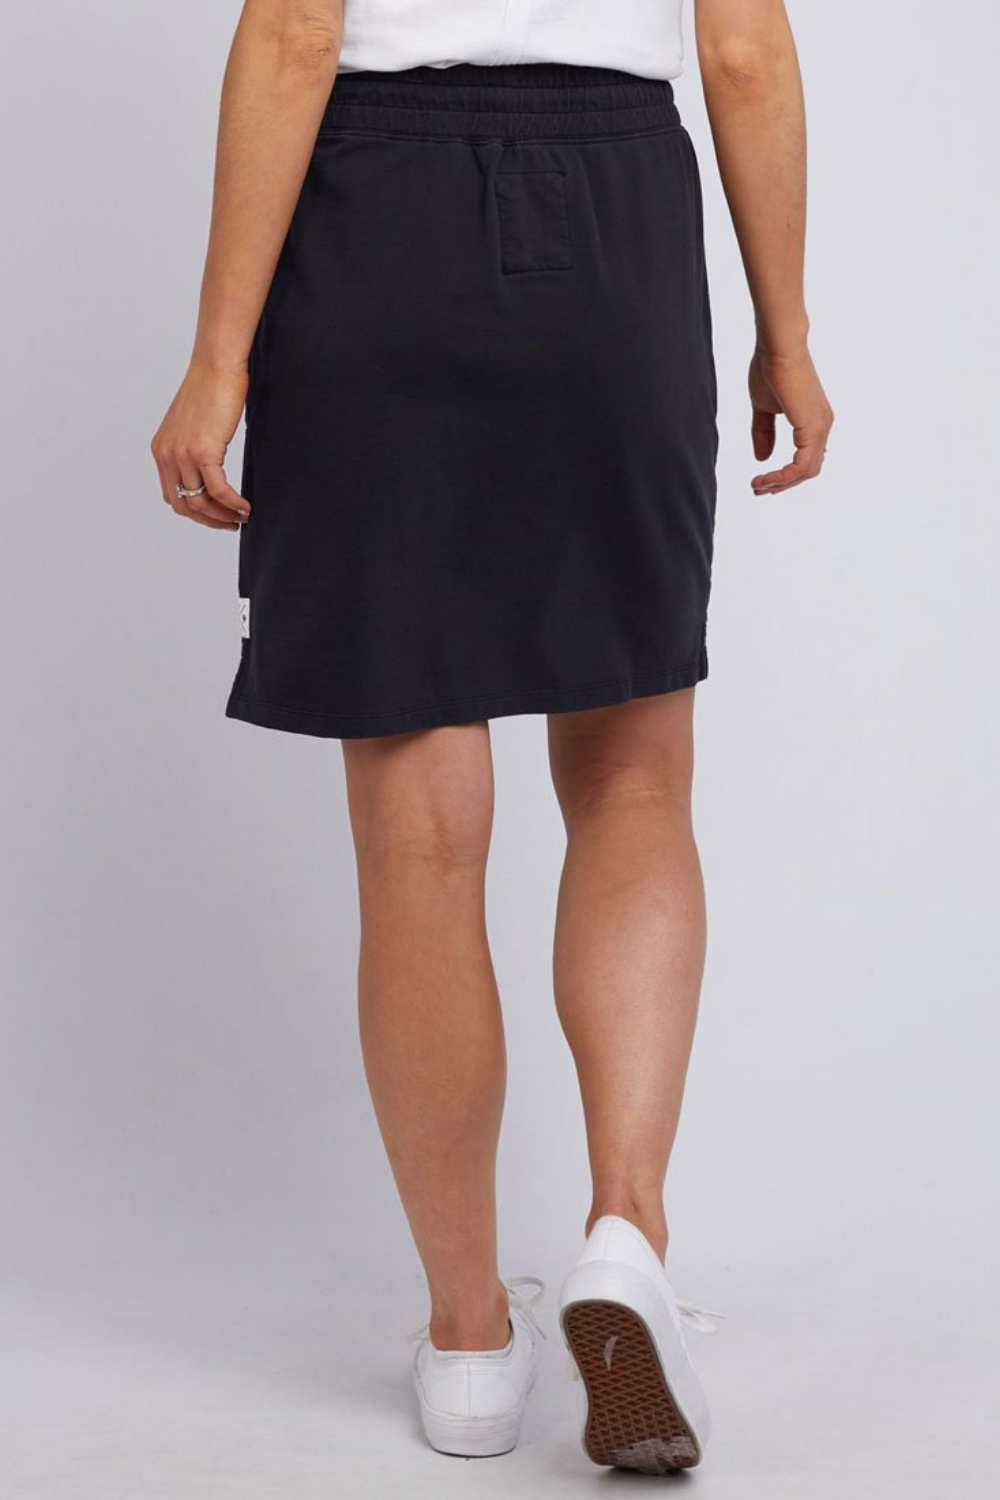 Cassie Skirt In Black